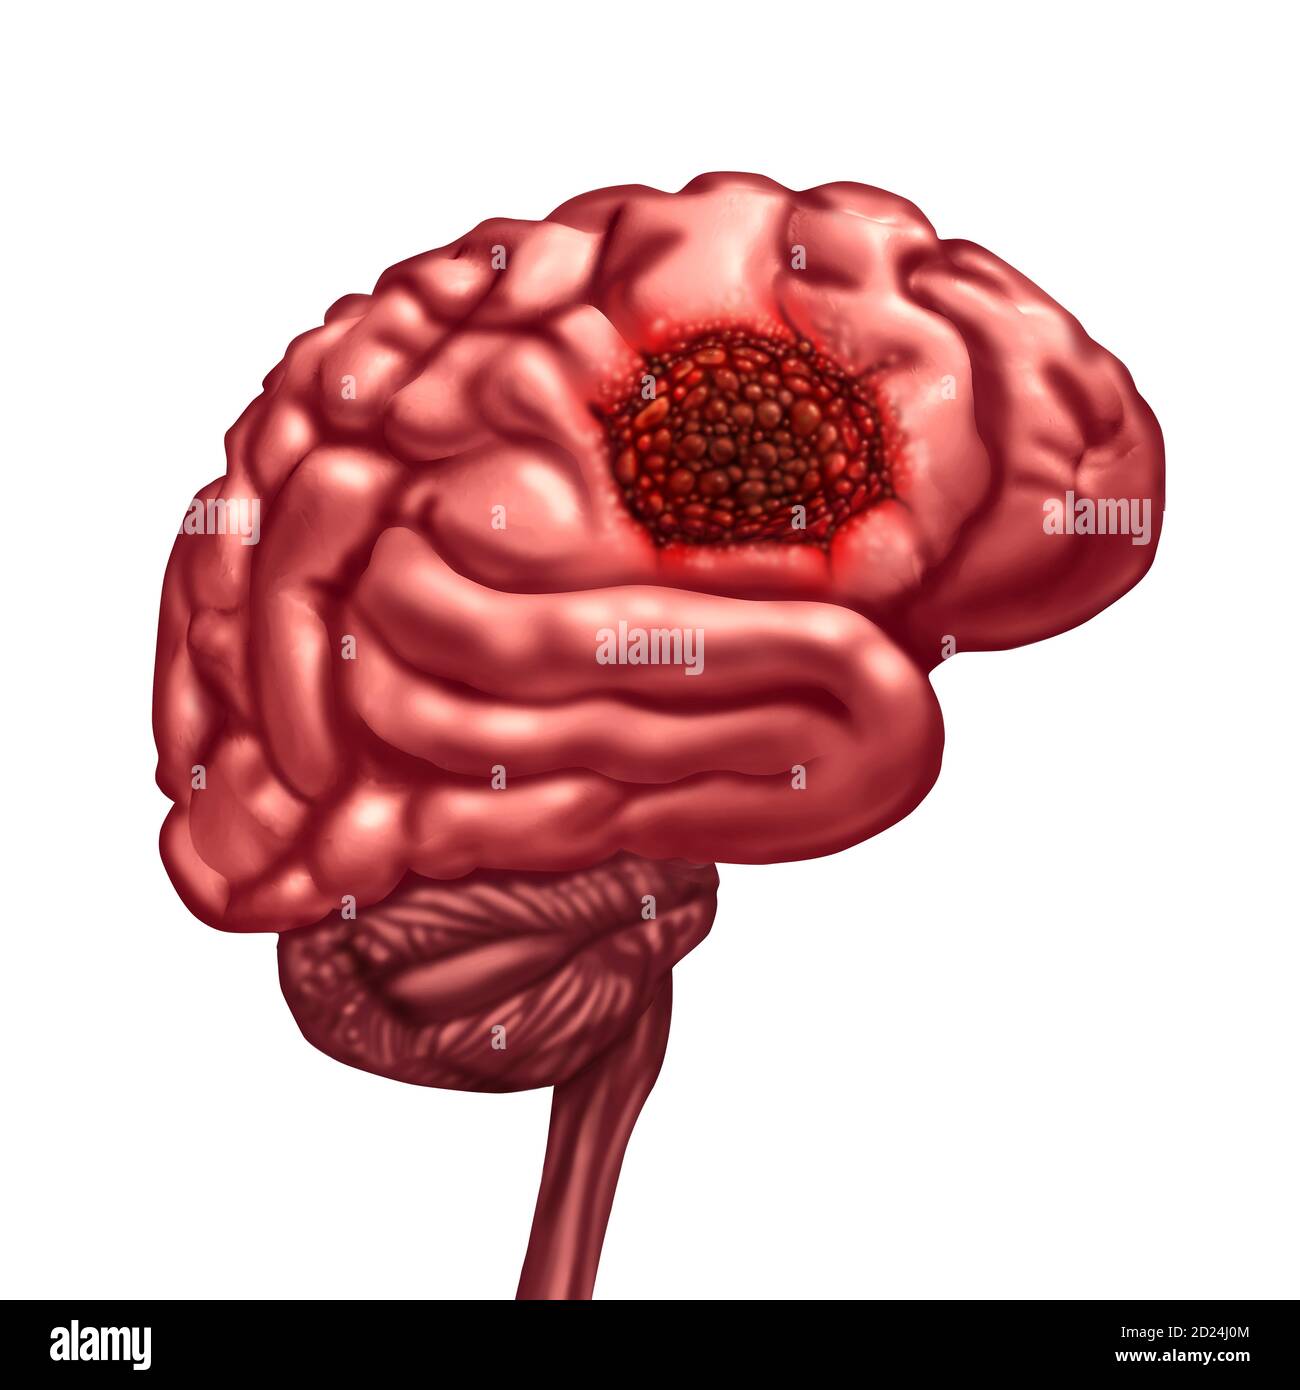 Hirntumor Anatomie Konzept und bösartige Tumor Symbol als neurologische Körperteil mit einer mikroskopischen Vergrößerung der bösartigen Zellen, die sich teilen. Stockfoto